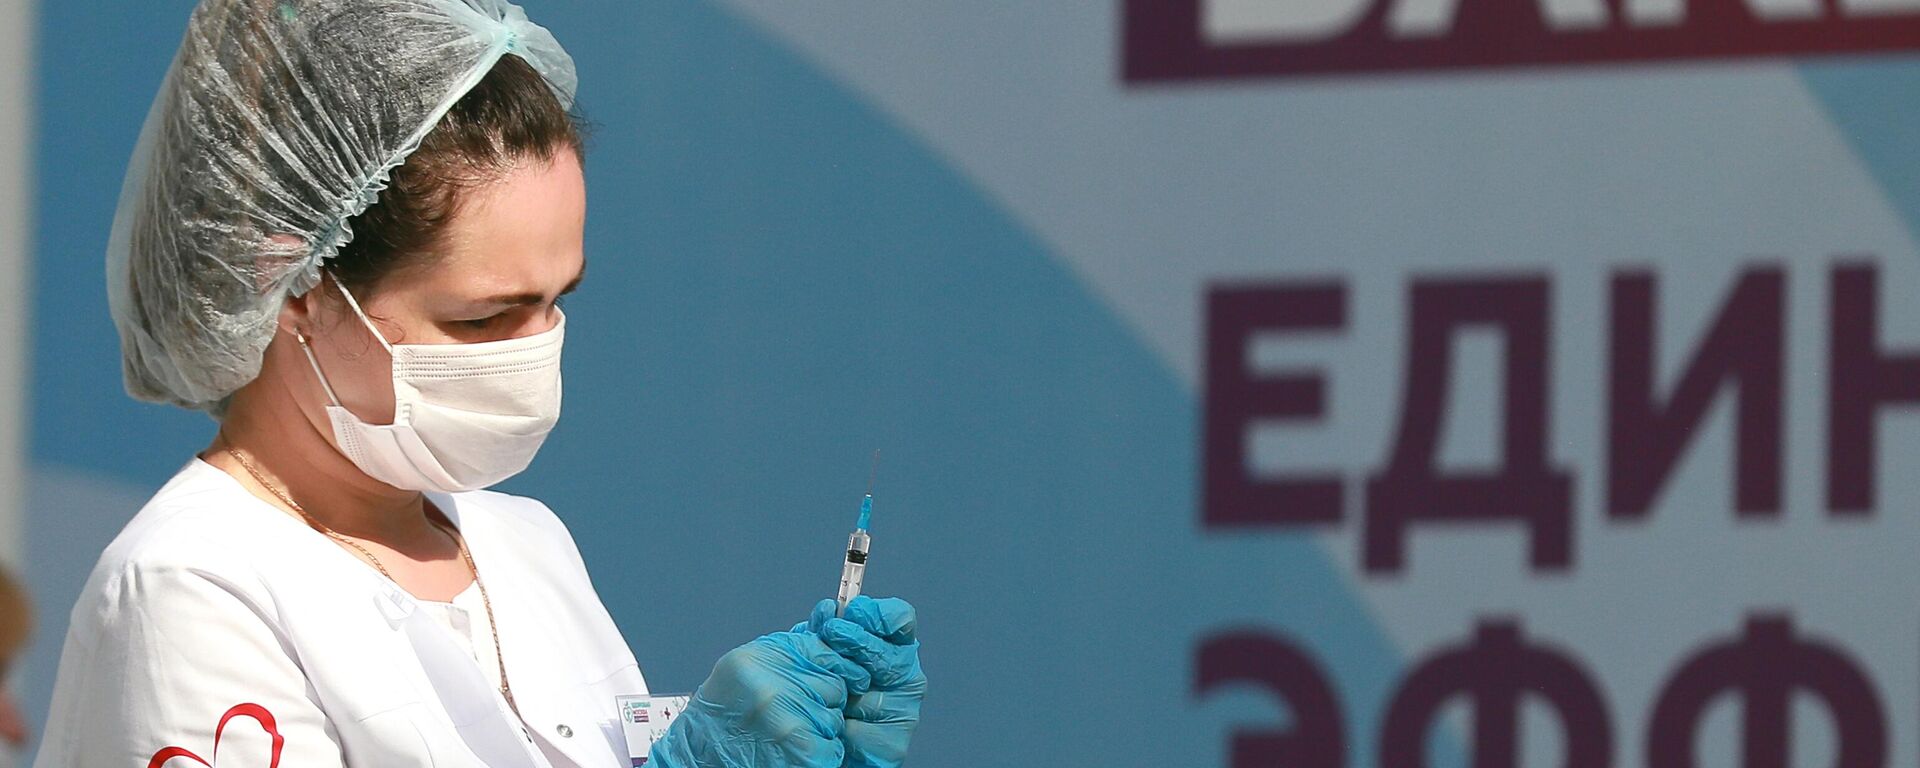 Медицинский работник держит в руках шприц с вакциной Гам-Ковид-Вак (Спутник V) от COVID-19 - Sputnik Латвия, 1920, 23.09.2021